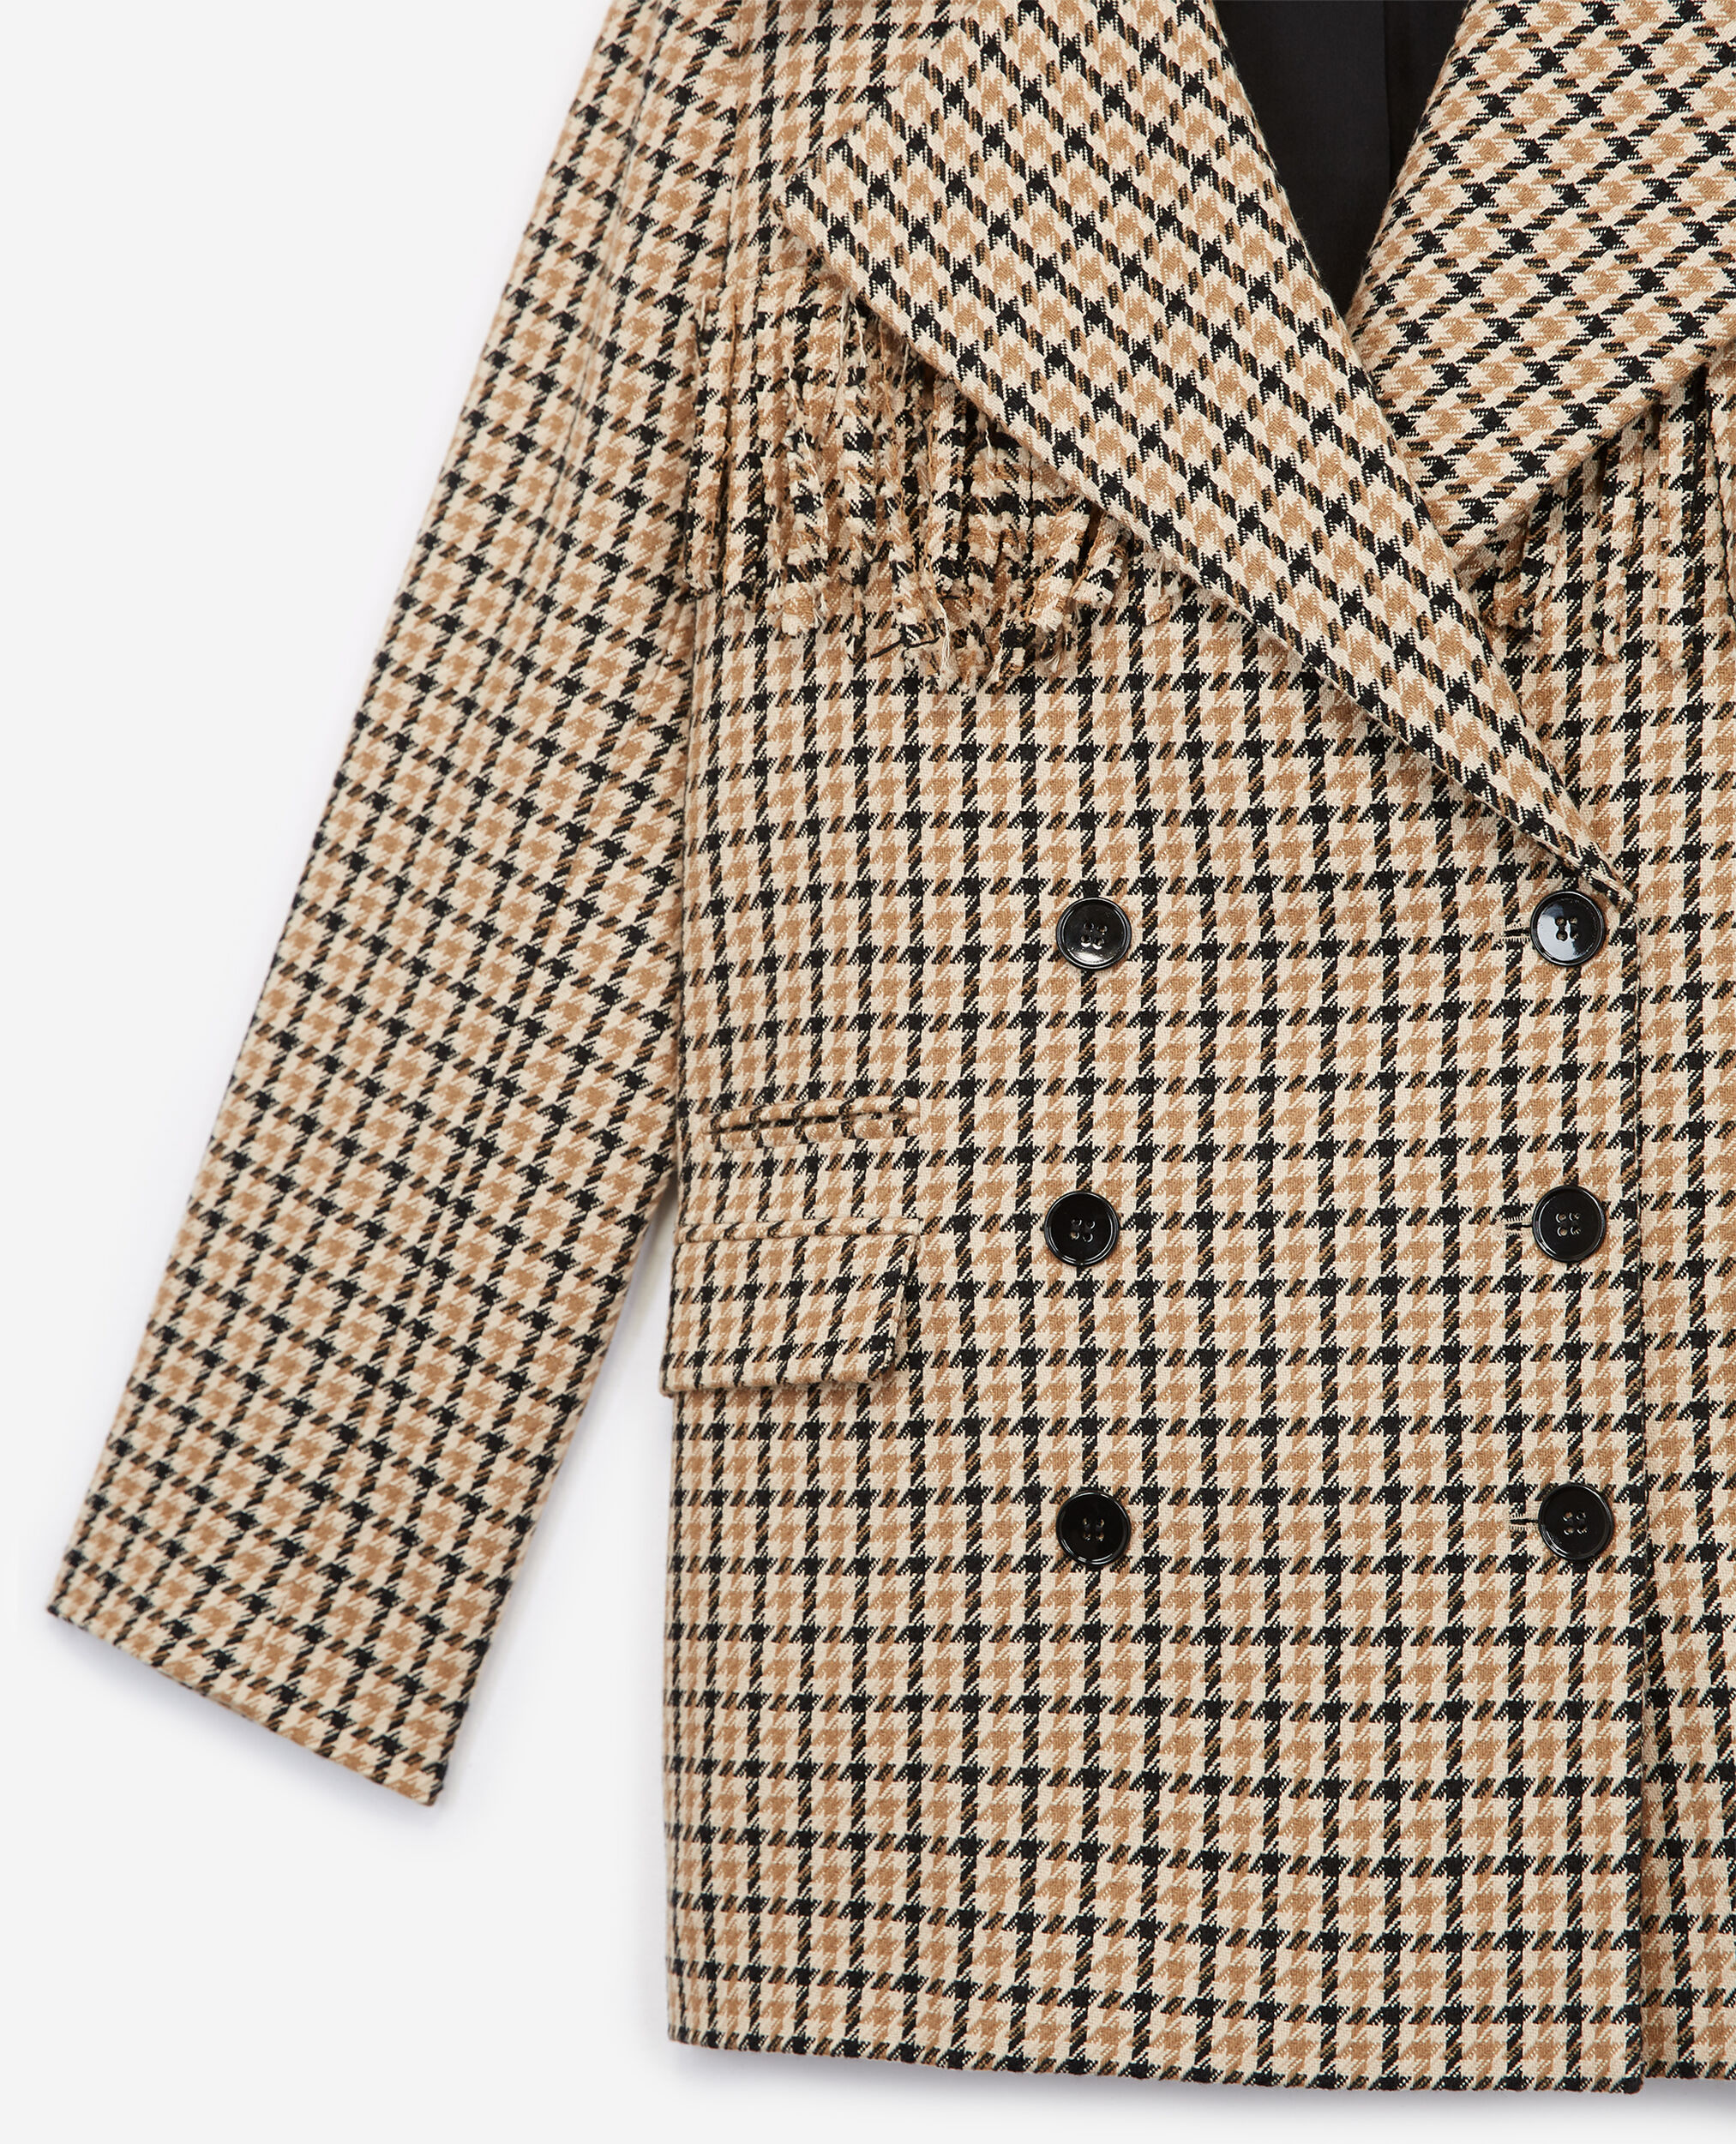 Patterned formal wool jacket with fringing, BEIGE / BROWN / BLACK, hi-res image number null